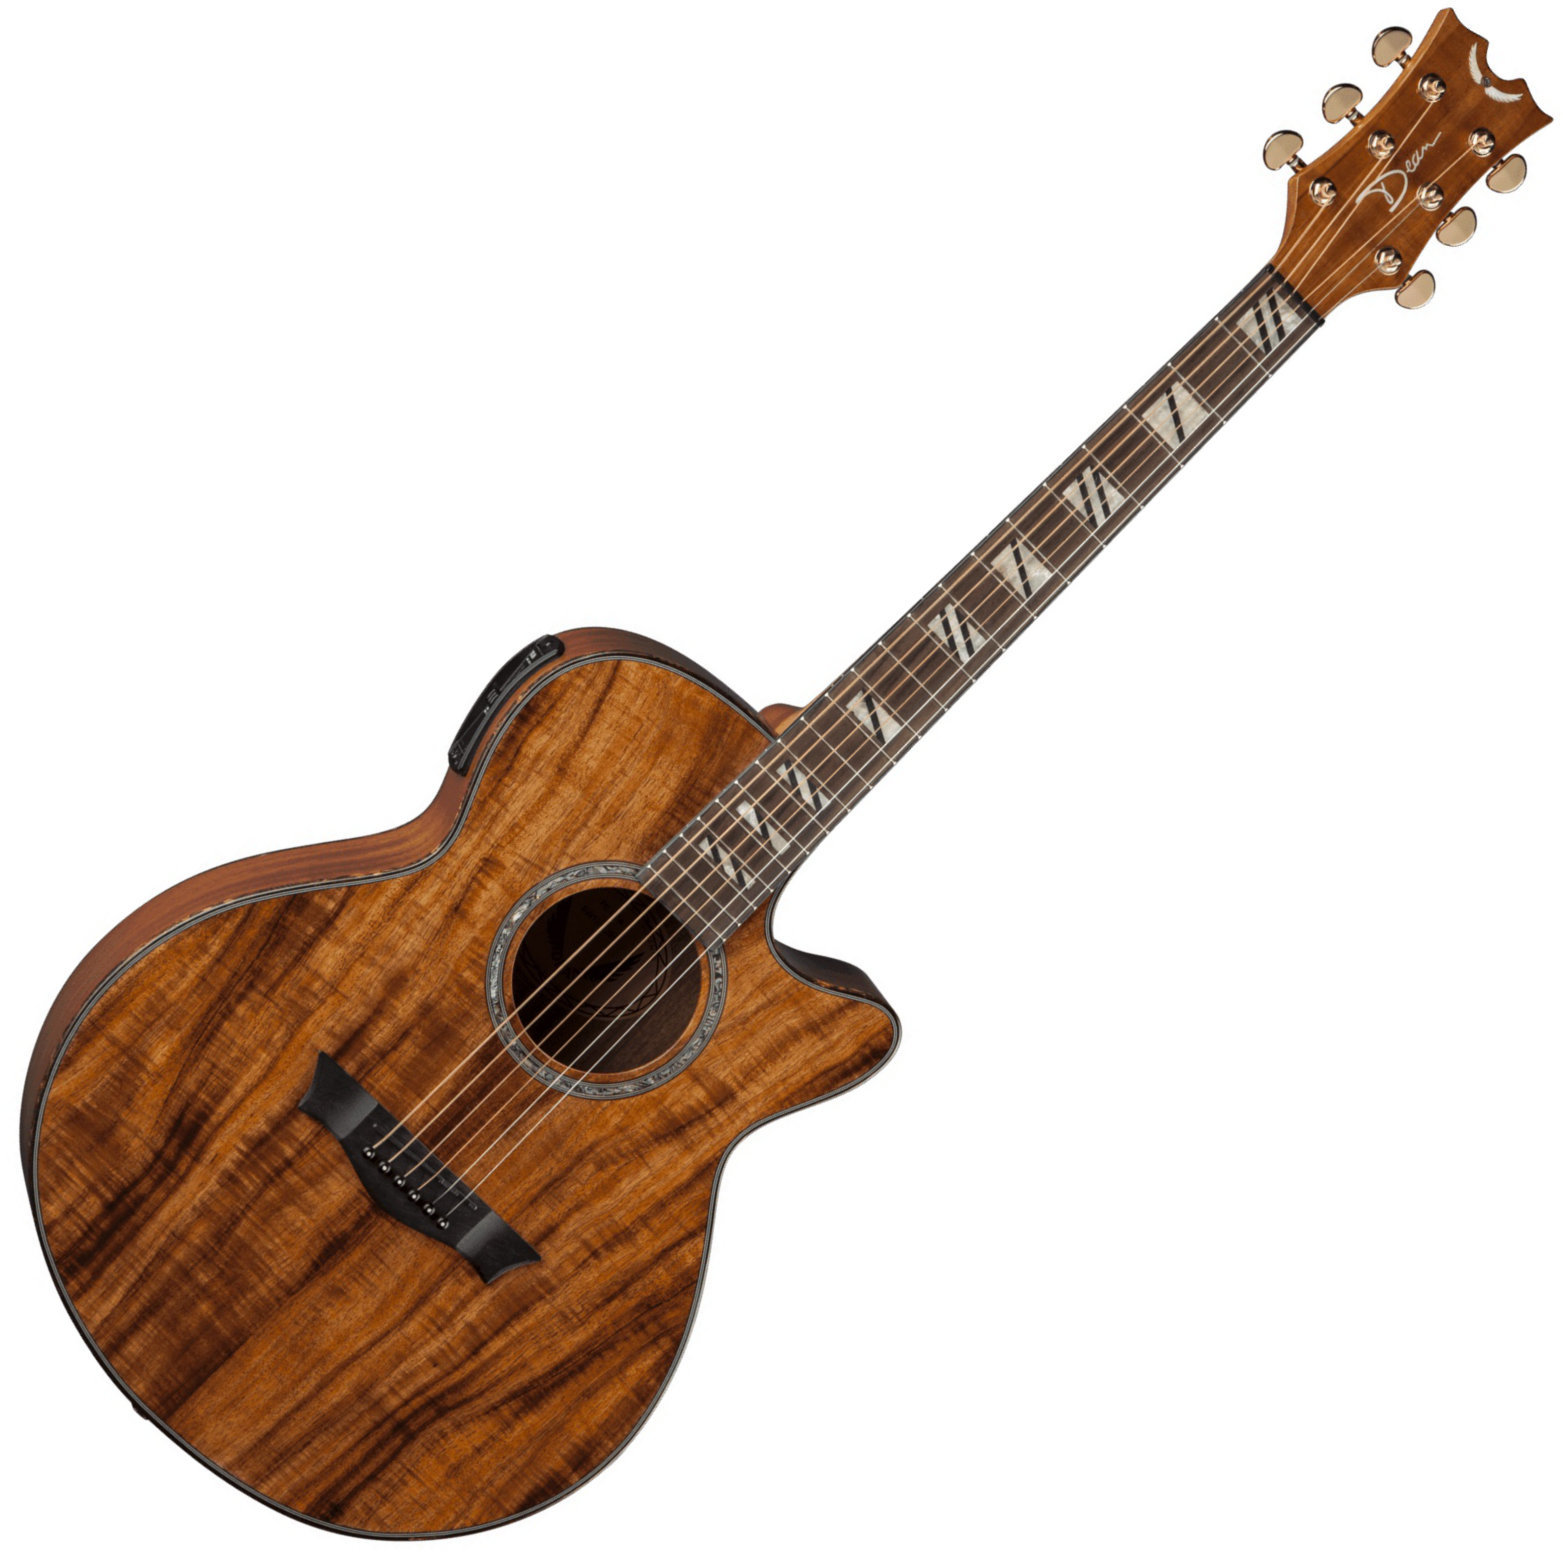 Ηλεκτροακουστική Κιθάρα Jumbo Dean Guitars Performer A/E with Aphex - Koa Wood